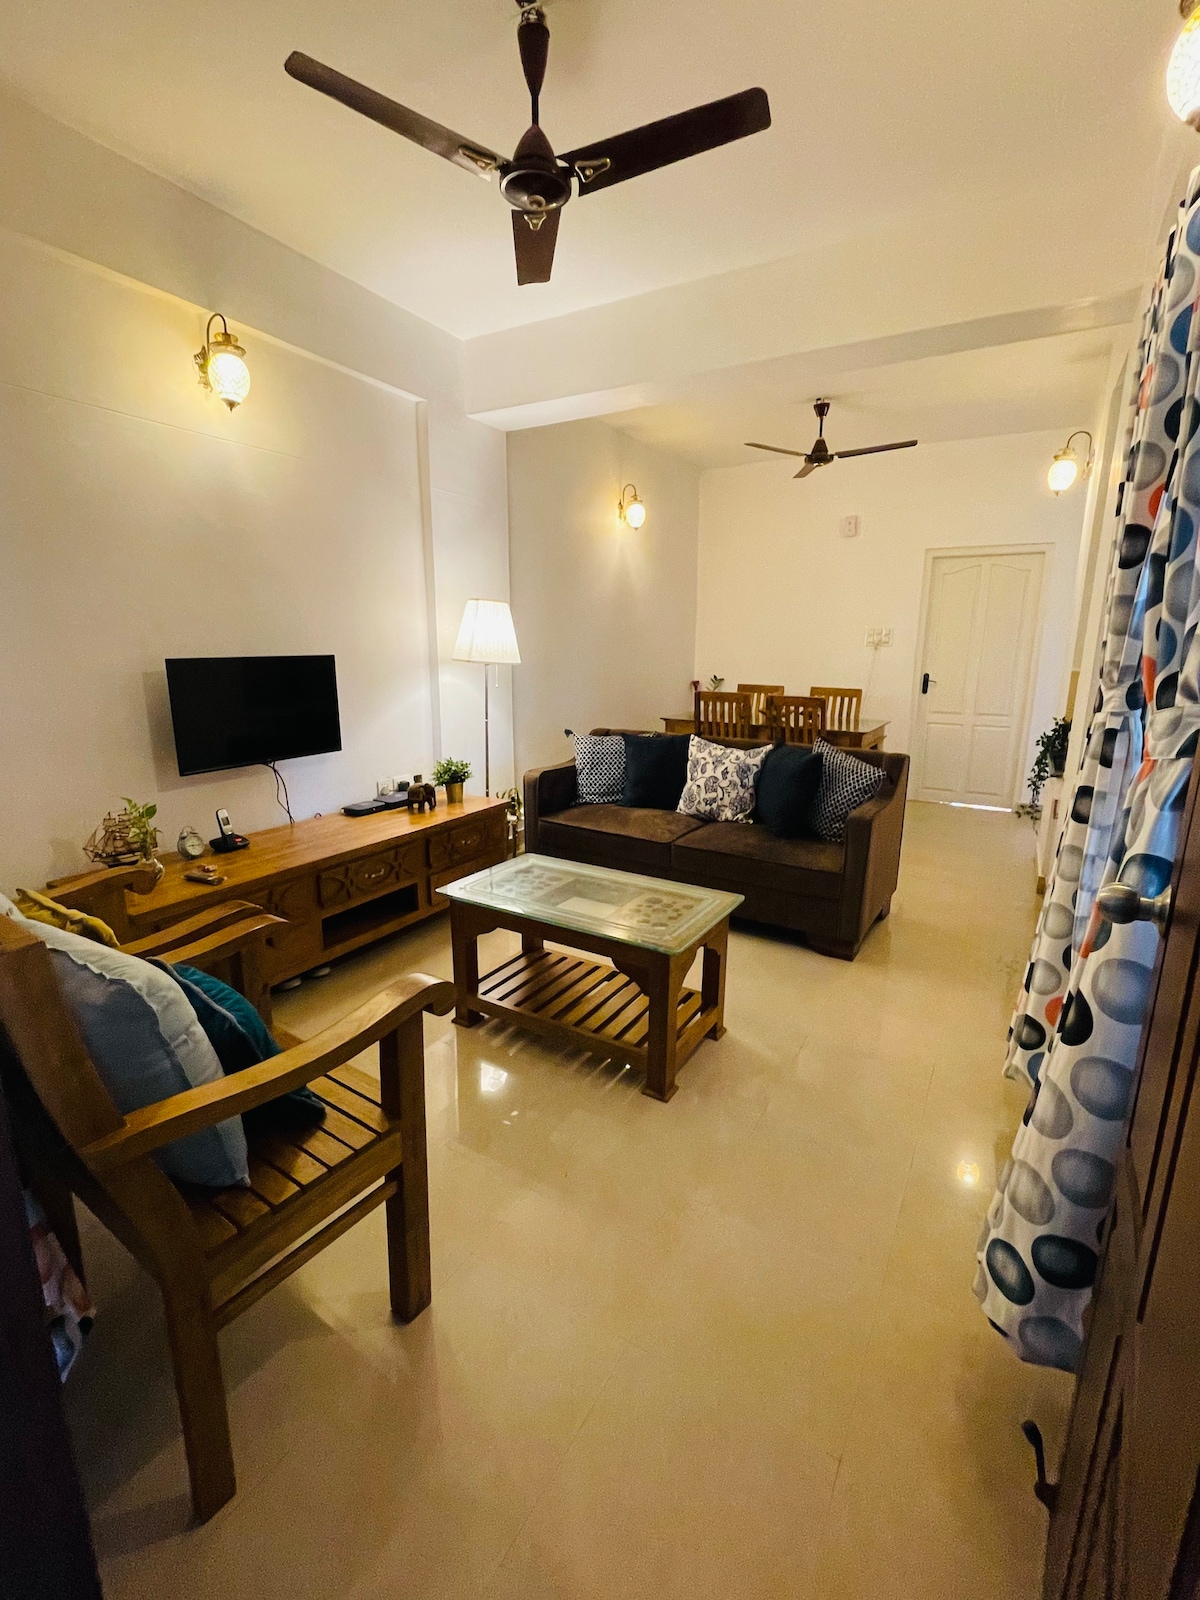 2 Bedroom, hall, kitchen A/C Flat near Lulu Kochi